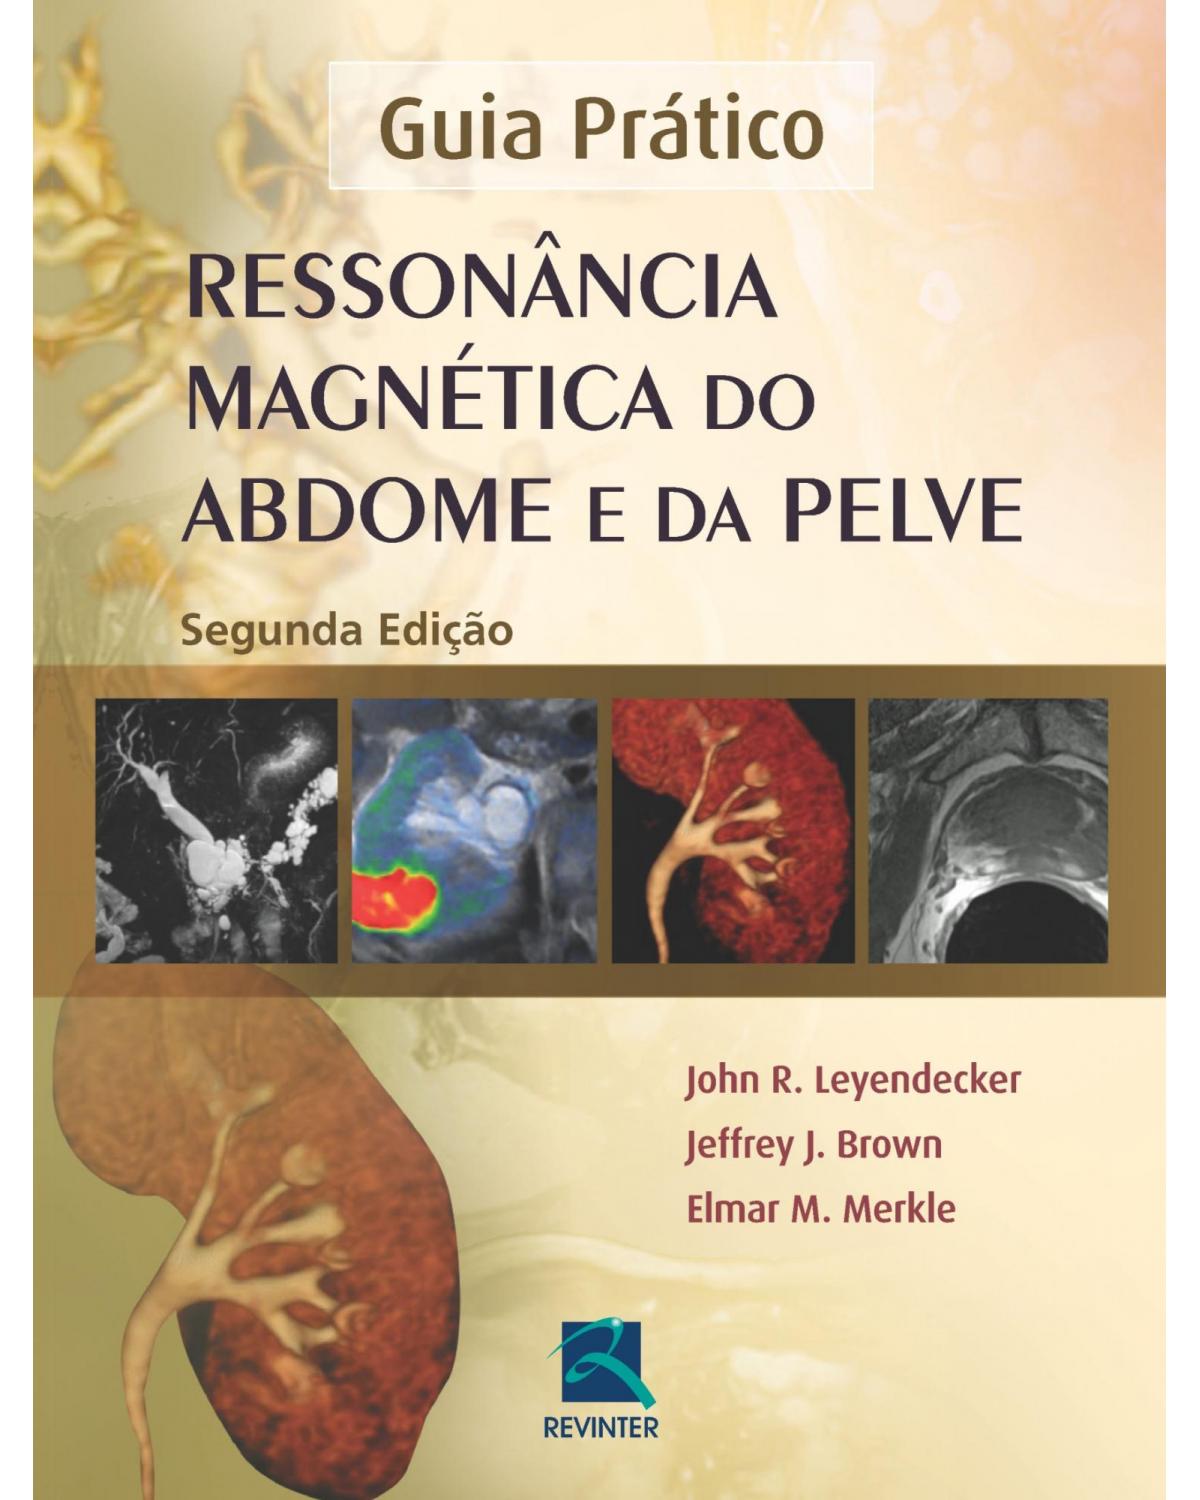 Ressonância magnética do abdome e da pelve - guia prático - 2ª Edição | 2014